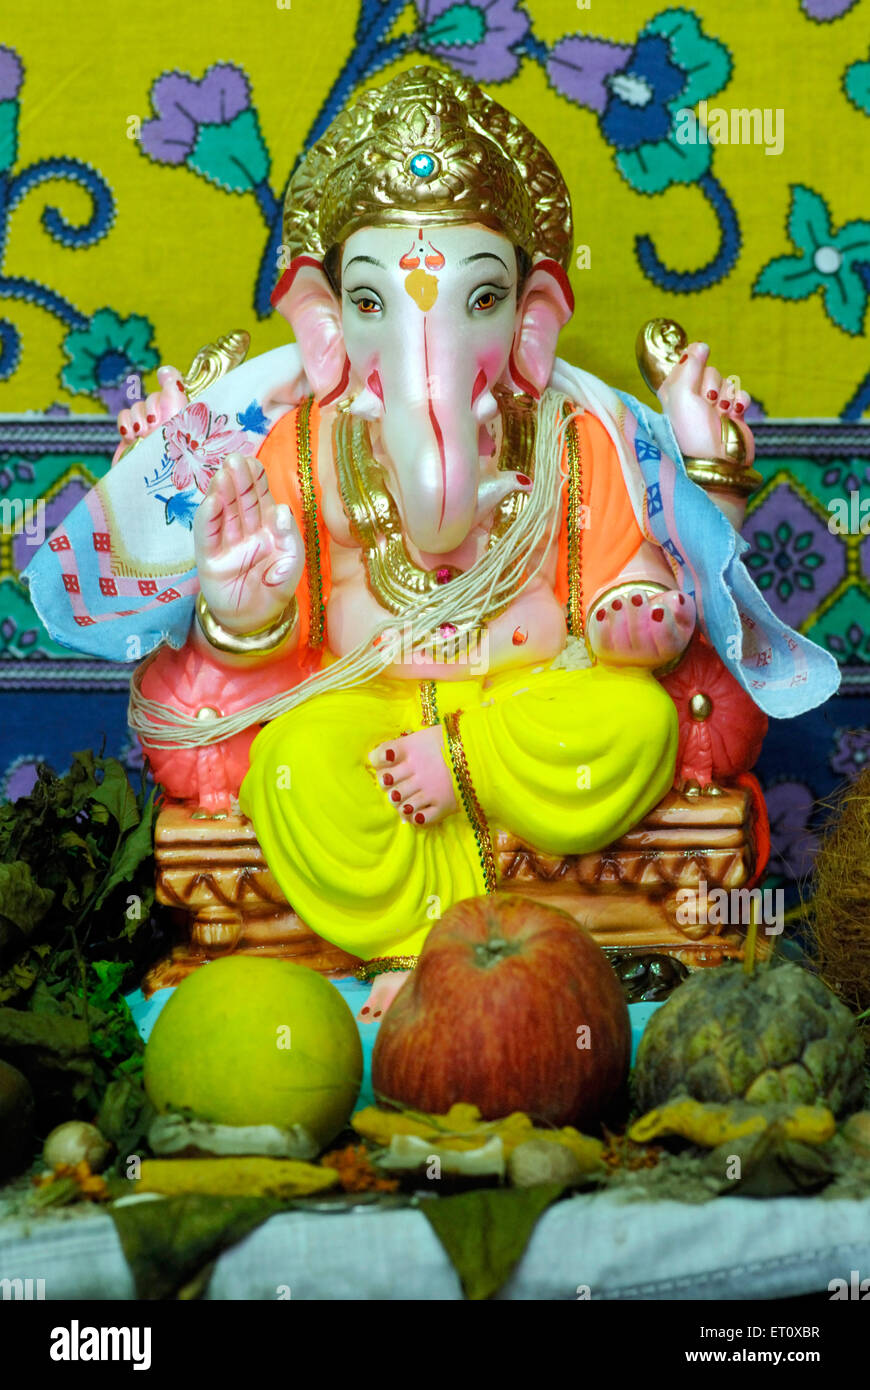 Richly decorated idol of lord Ganesh elephant headed God ; Ganapati festival year 2008 at Pune ; Maharashtra ; India Stock Photo